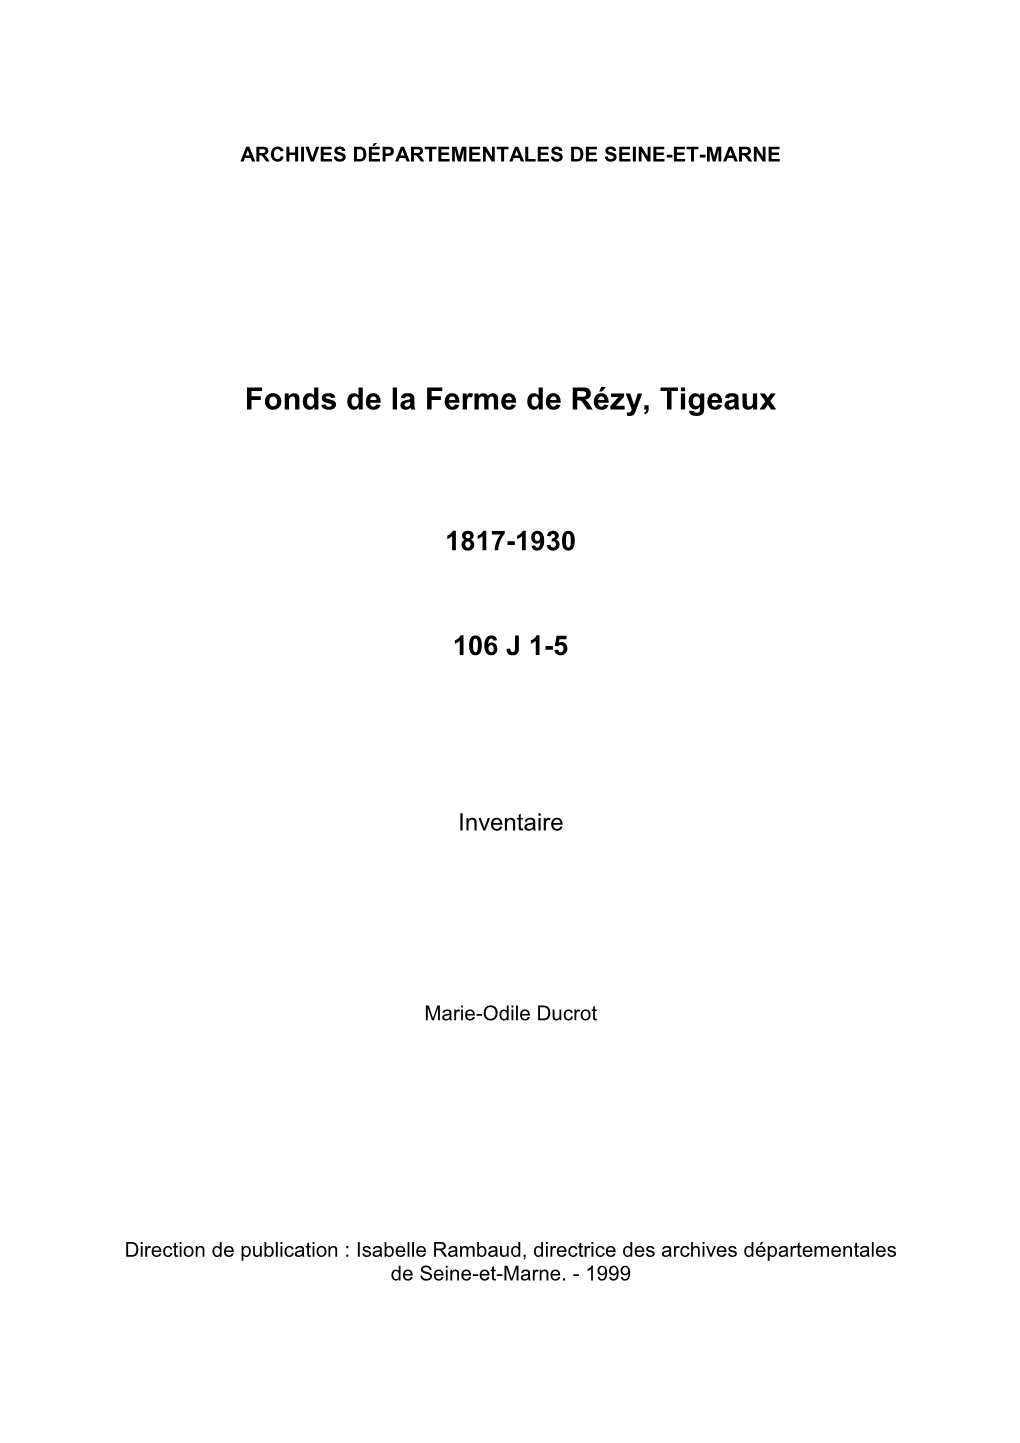 Inventaire Du Fonds De La Ferme De Rézy, Tigeaux